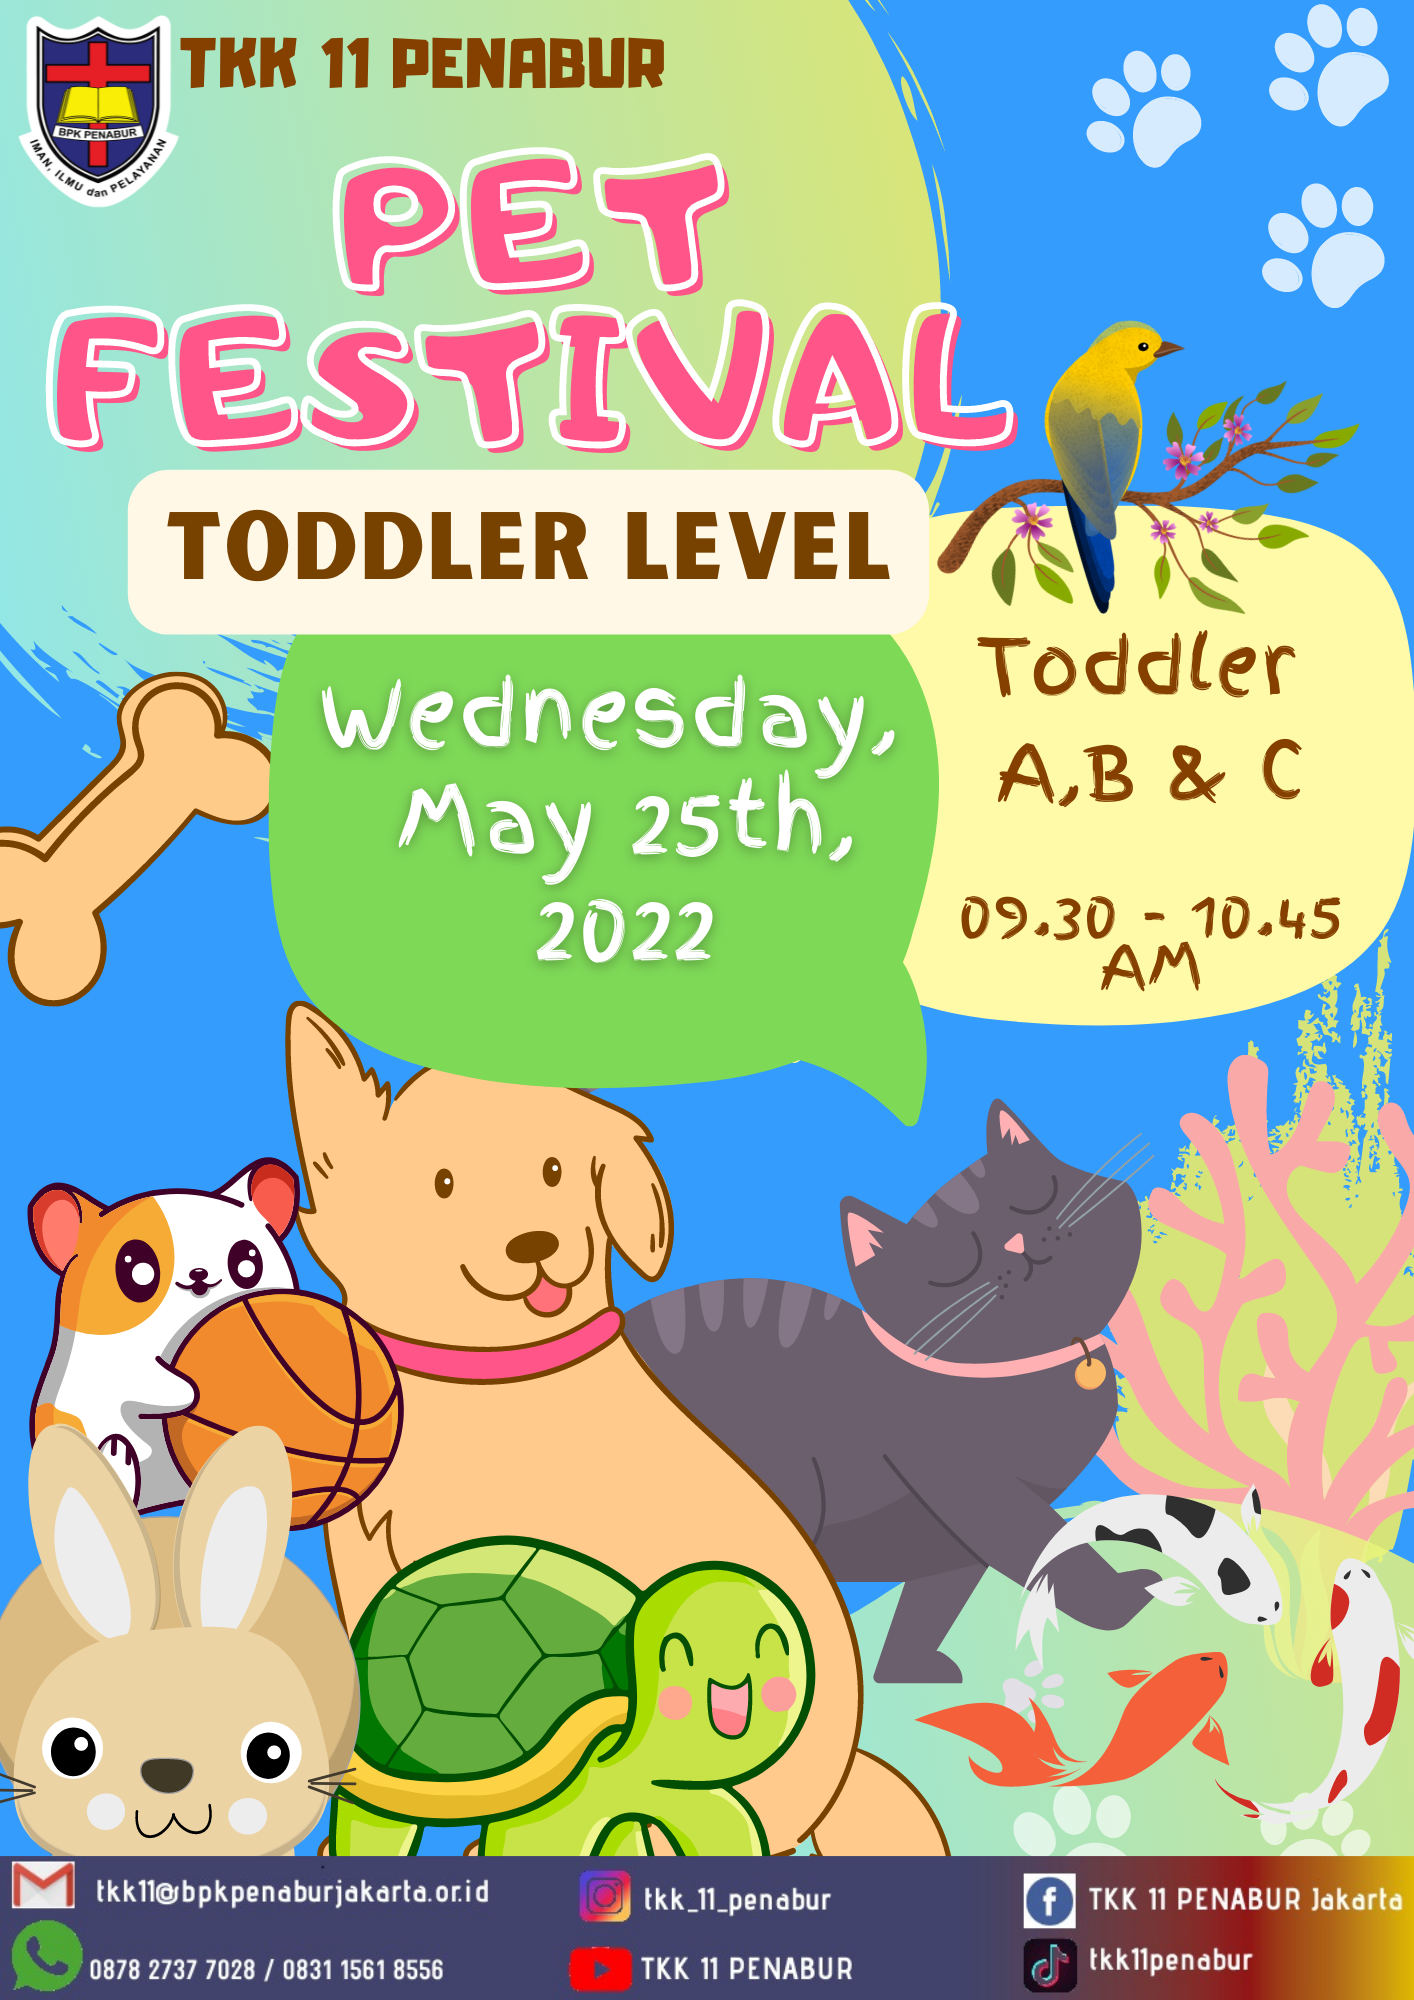 Toddler 4th Festival Pet Festival